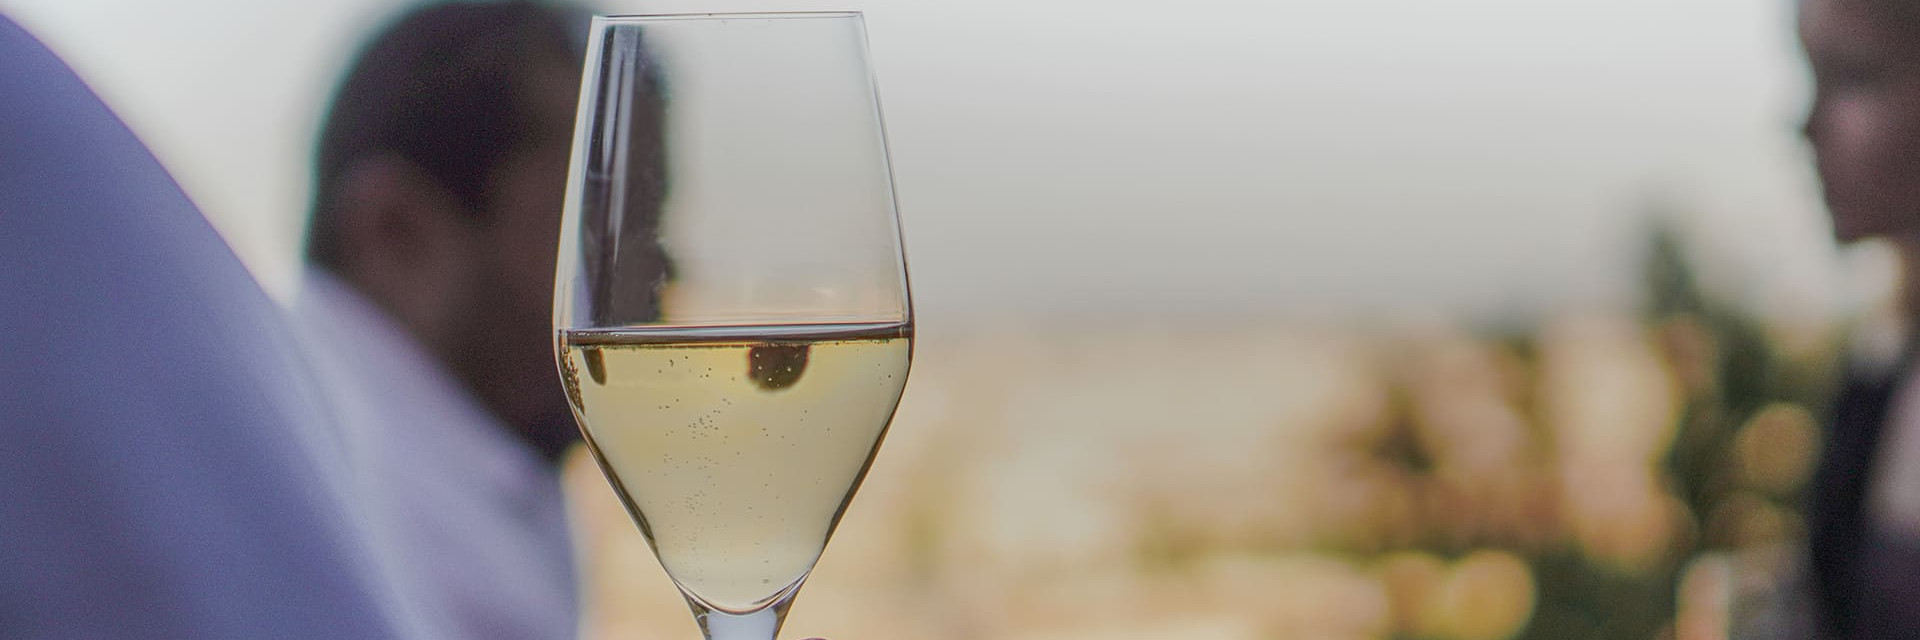 Romantische Momente, wie ein gemeinsames Glas Wein oder Champagner bei Sonnenuntergang in guter Gesellschaft.